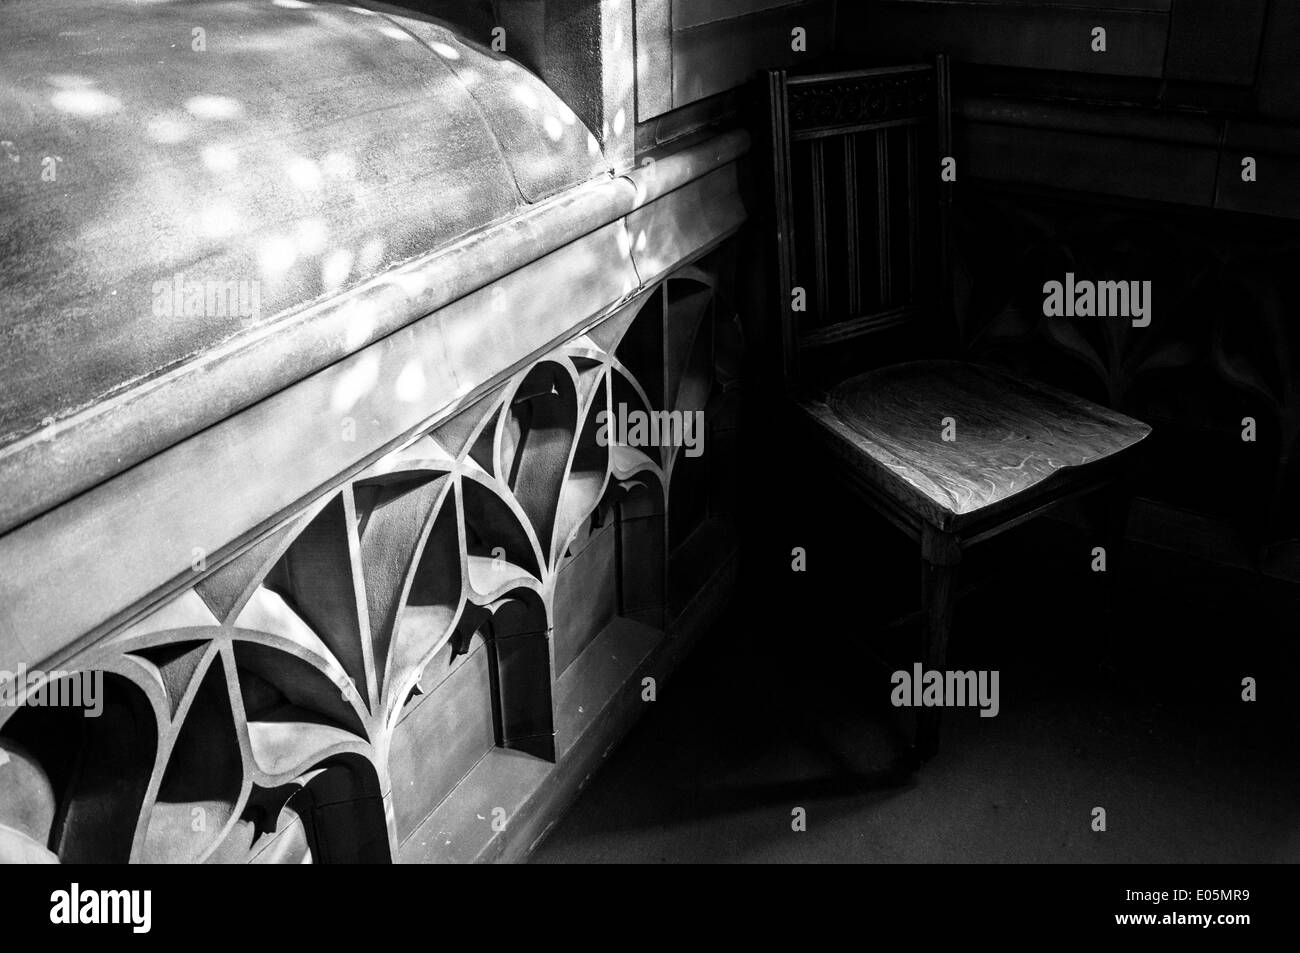 Holzstuhl teilweise im tiefen Schatten befindet sich innerhalb einer gotischen Sandstein-Bibliothek. Schatten sind tief & Lichtspiele auf dem Stein. Stockfoto